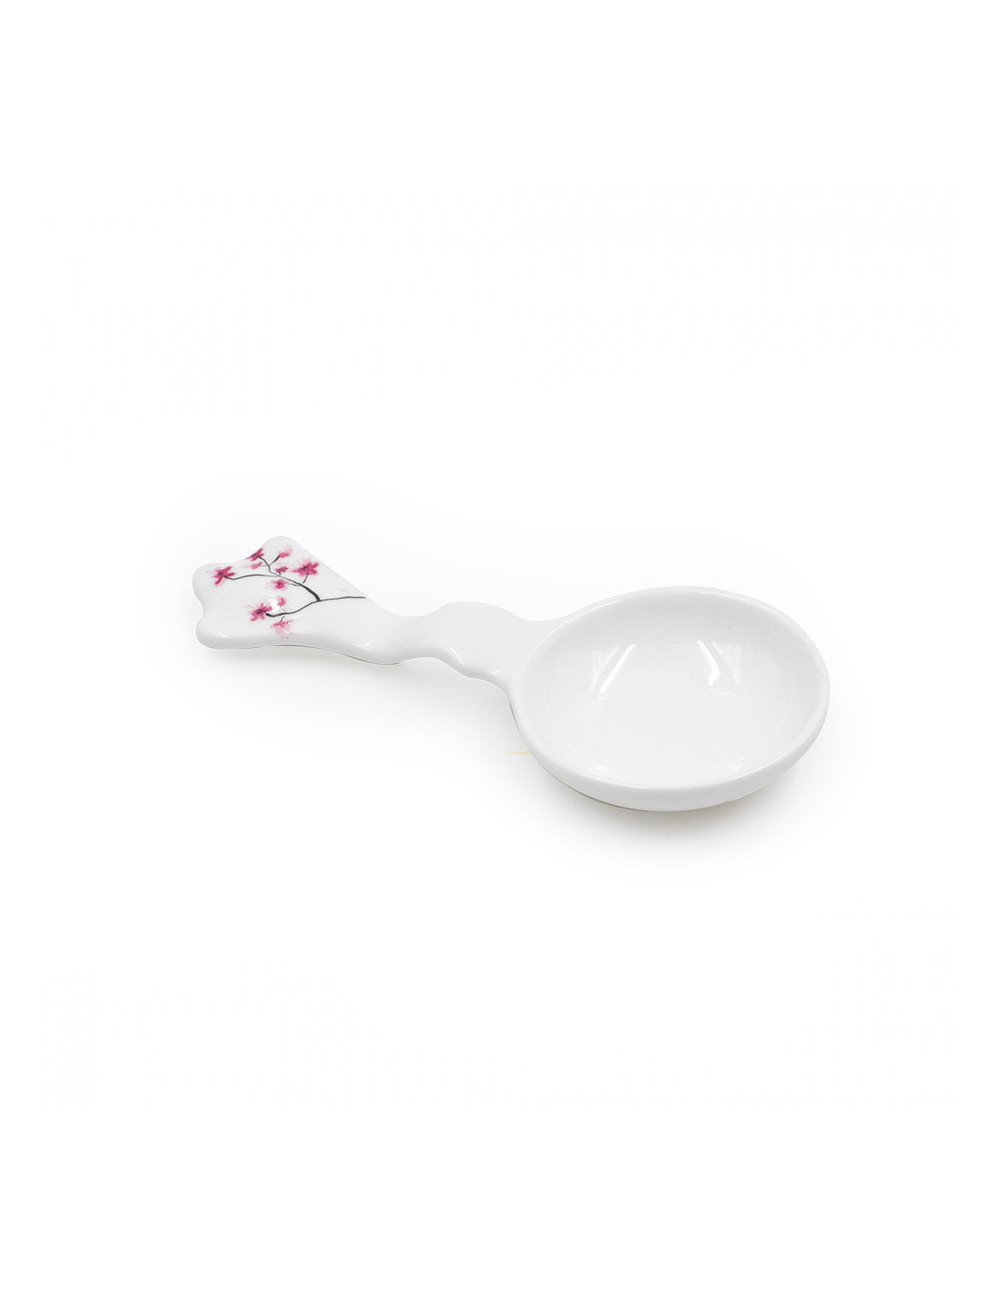 Poggia filtro in fine porcellana bianca con  fiori di ciliegio - La Pianta del Tè Vendita online